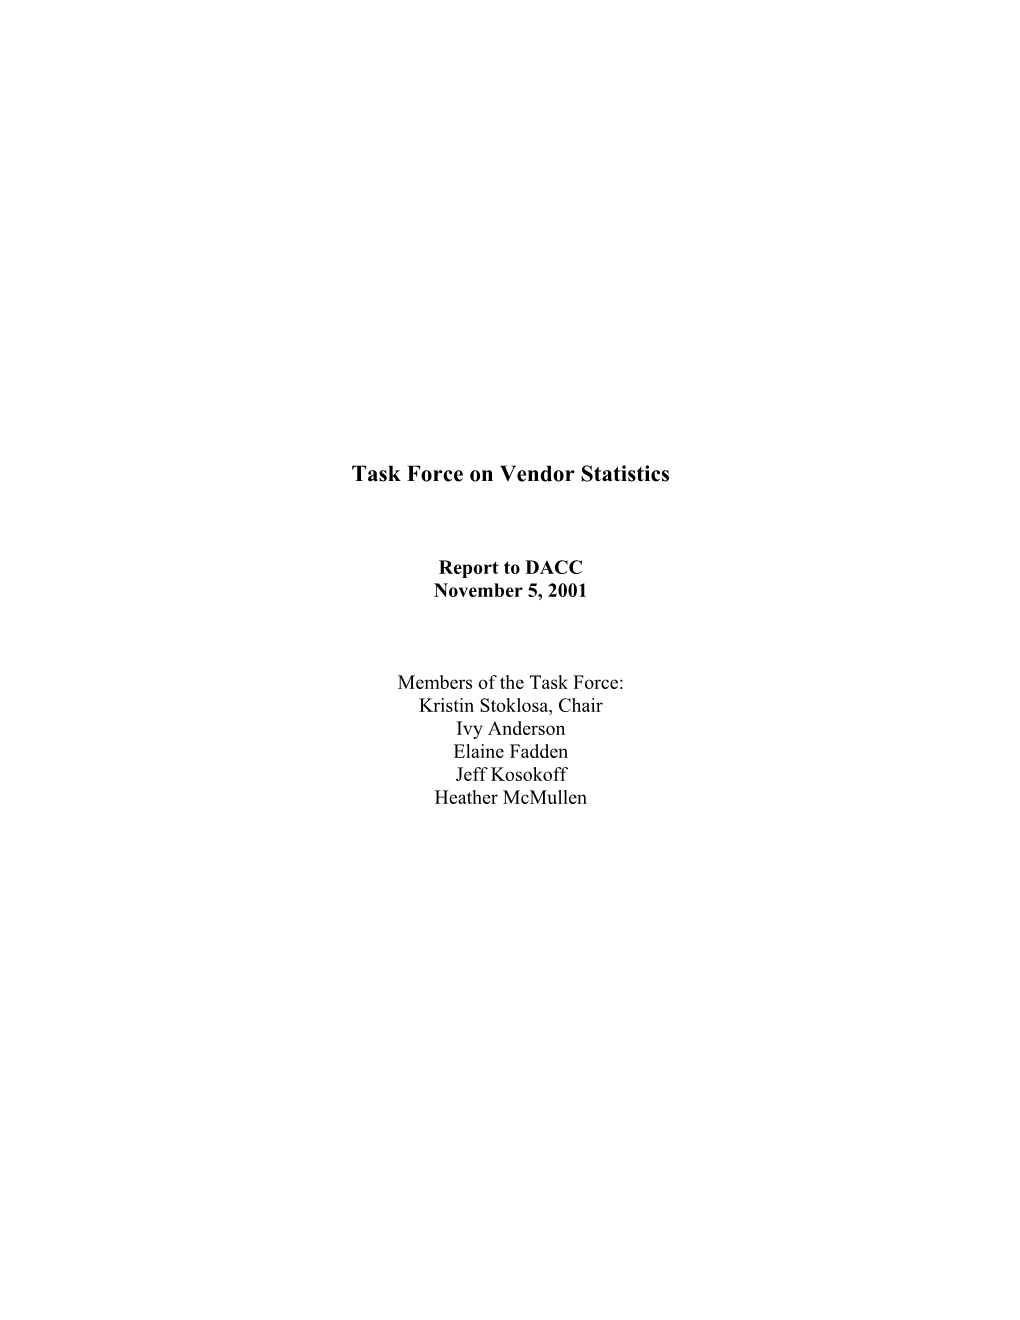 Vendor Statistics Task Force